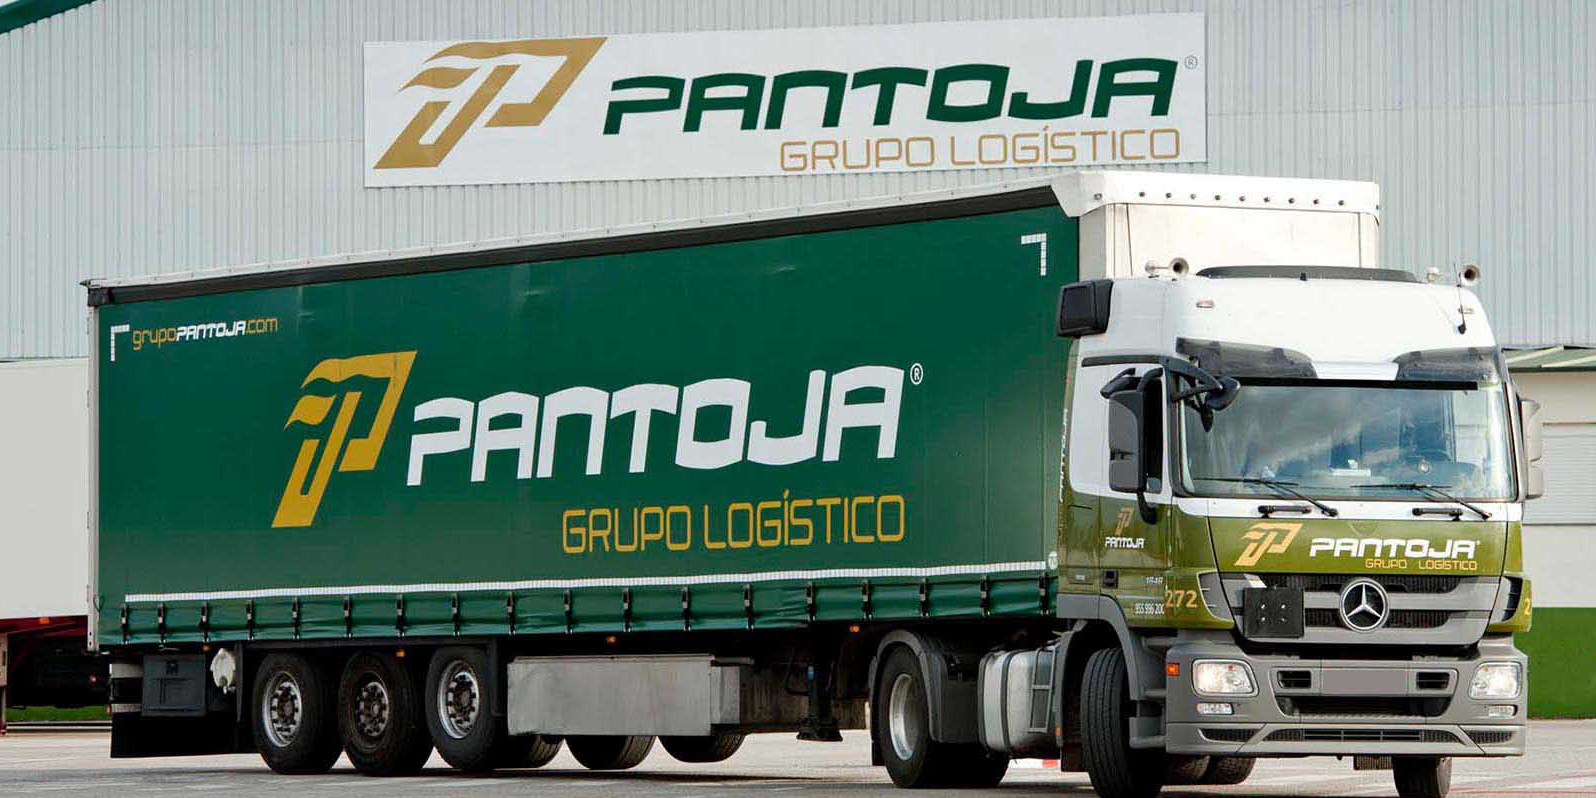 Le groupe logistique espagnol Pantoja s'implante dans l'Aude